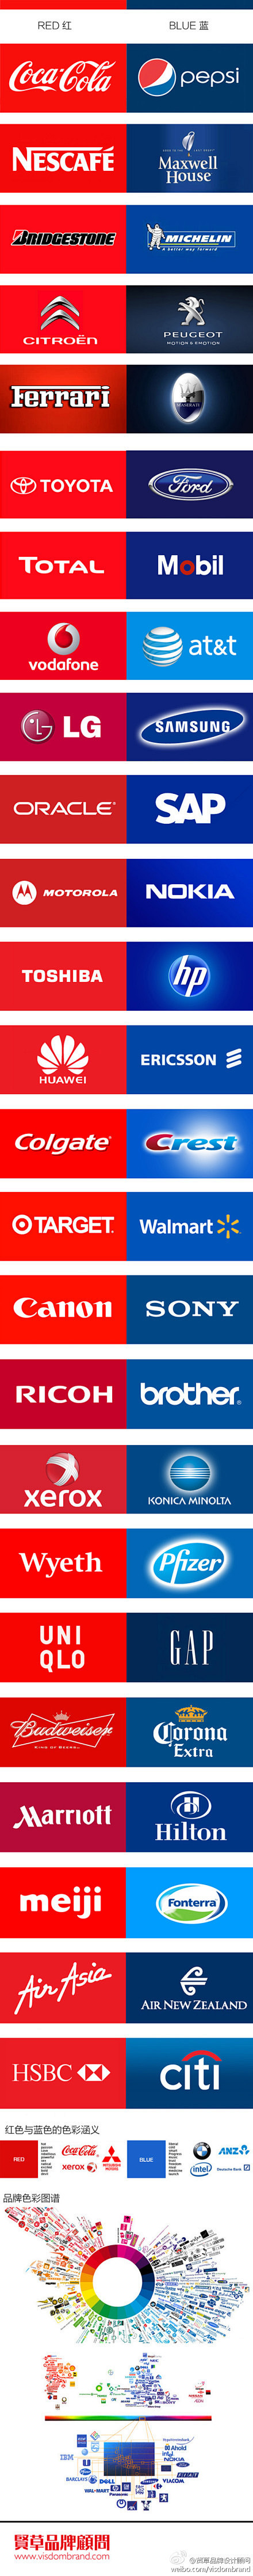 全球54个红蓝品牌对对碰-从未有过的品牌...